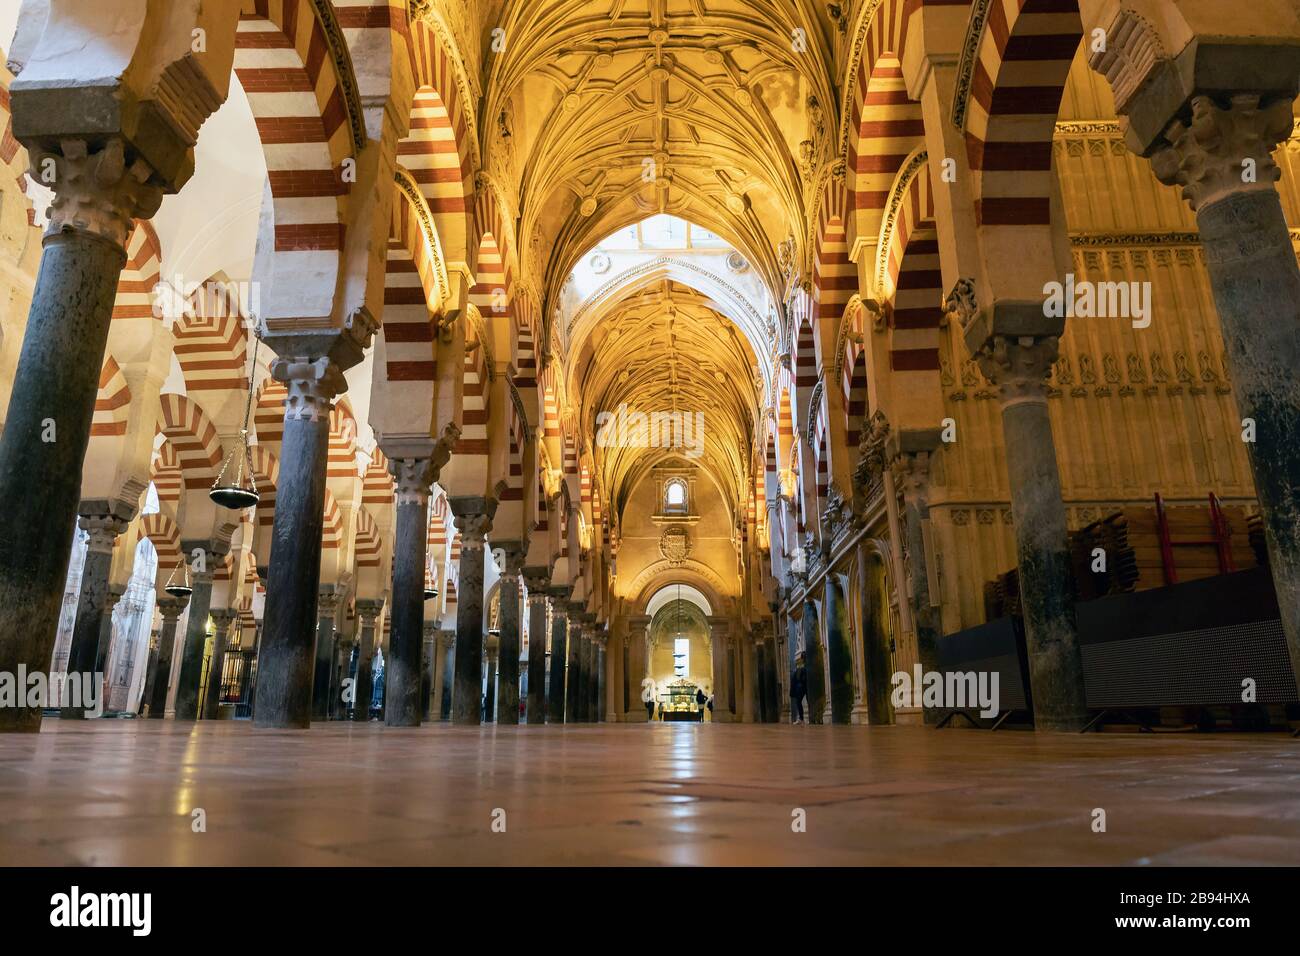 La Mezquita. La Mosquée. Intérieur. Cordoba, province de Cordoba, Andalousie, sud de l'Espagne. Le centre historique de Cordoue est un Heritag mondial de l'UNESCO Banque D'Images